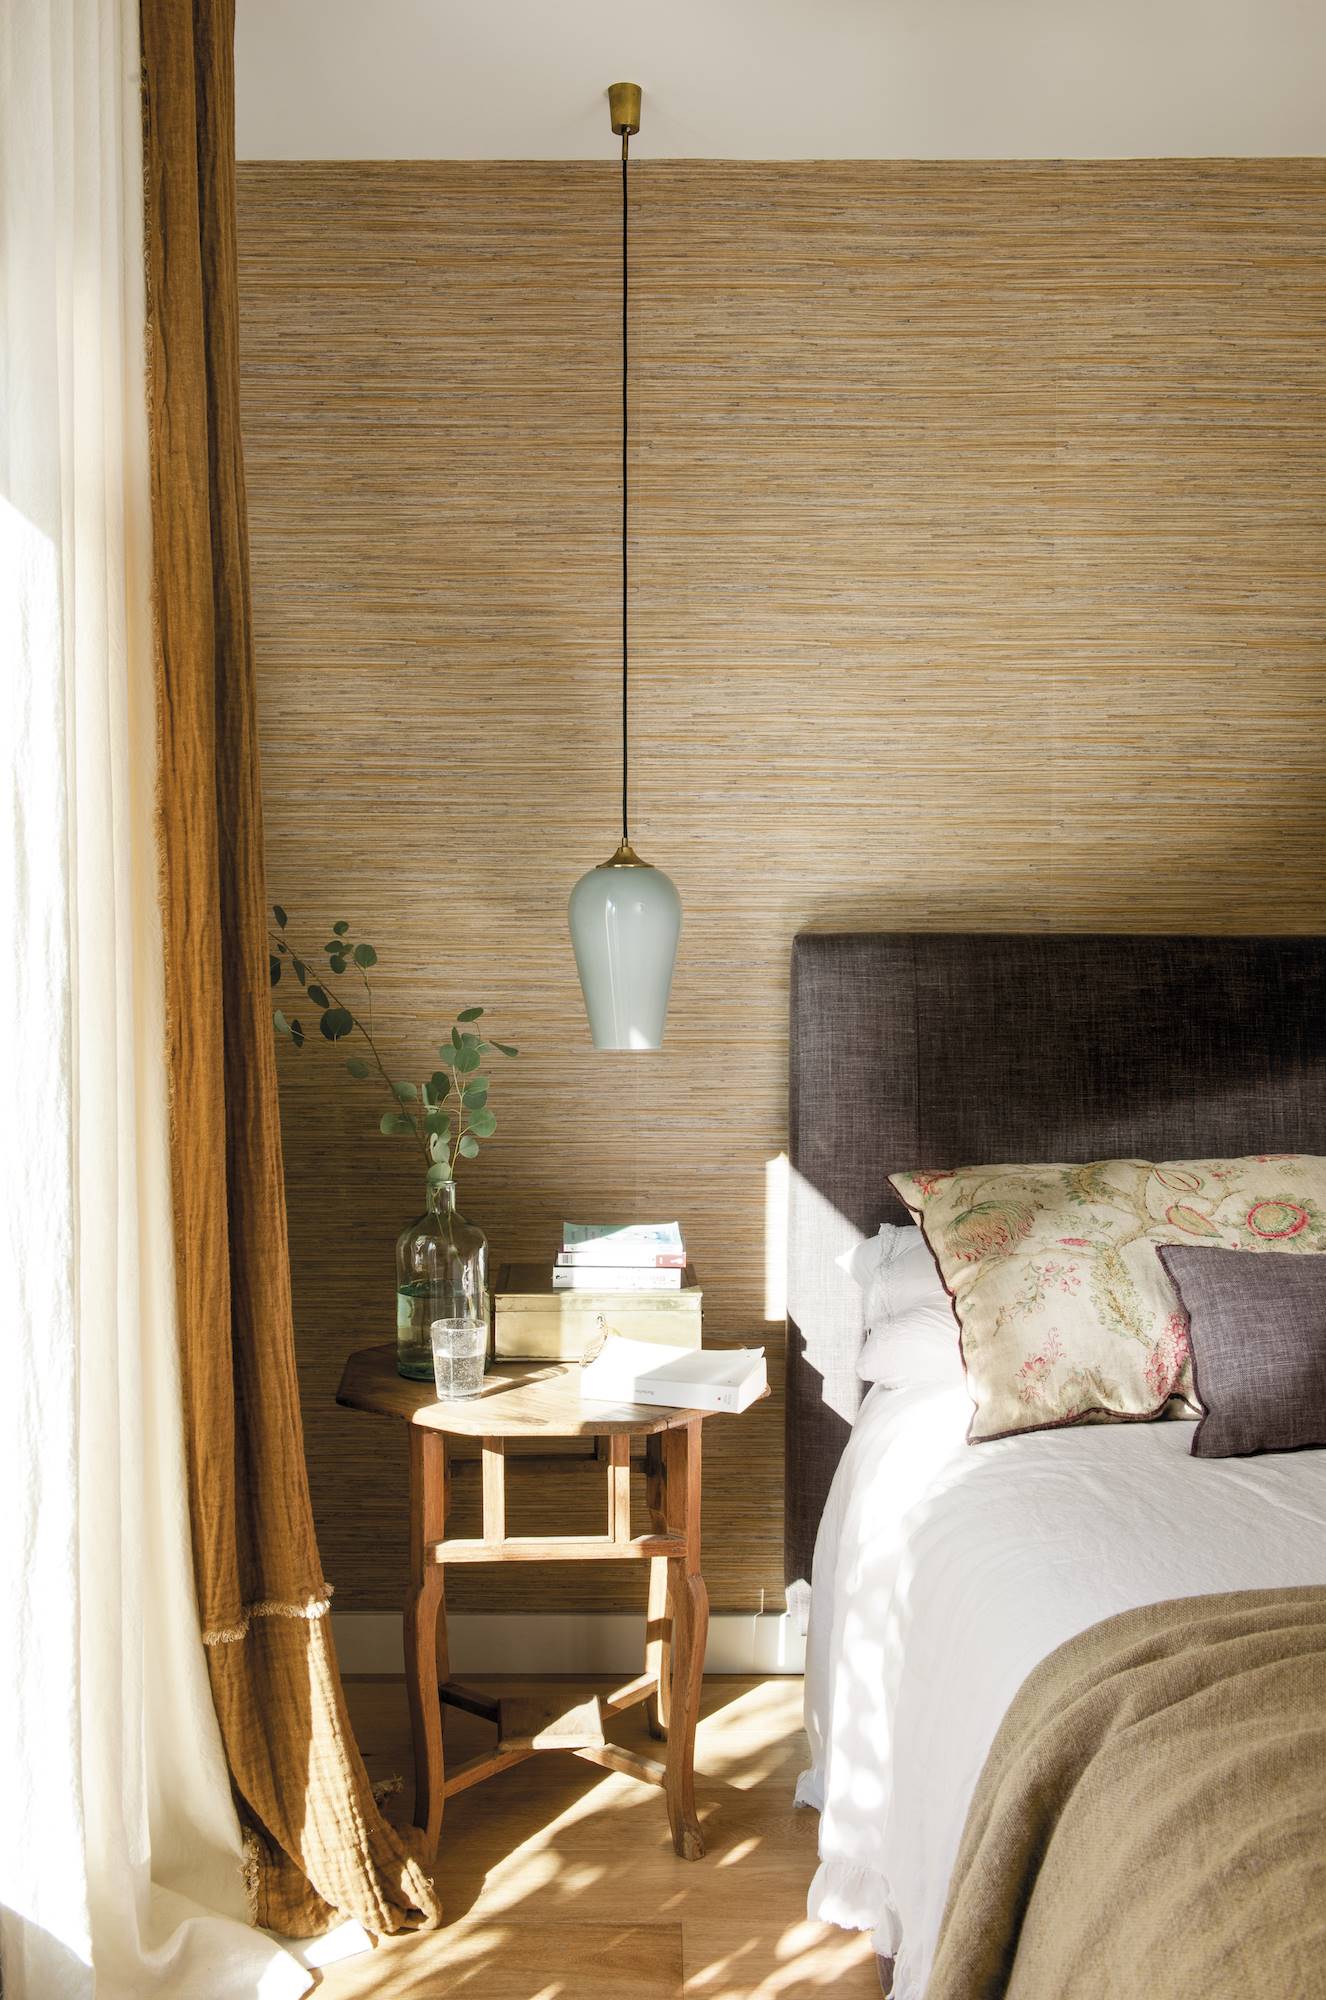 Dormitorio con papel pintado colores marrones y ocres.